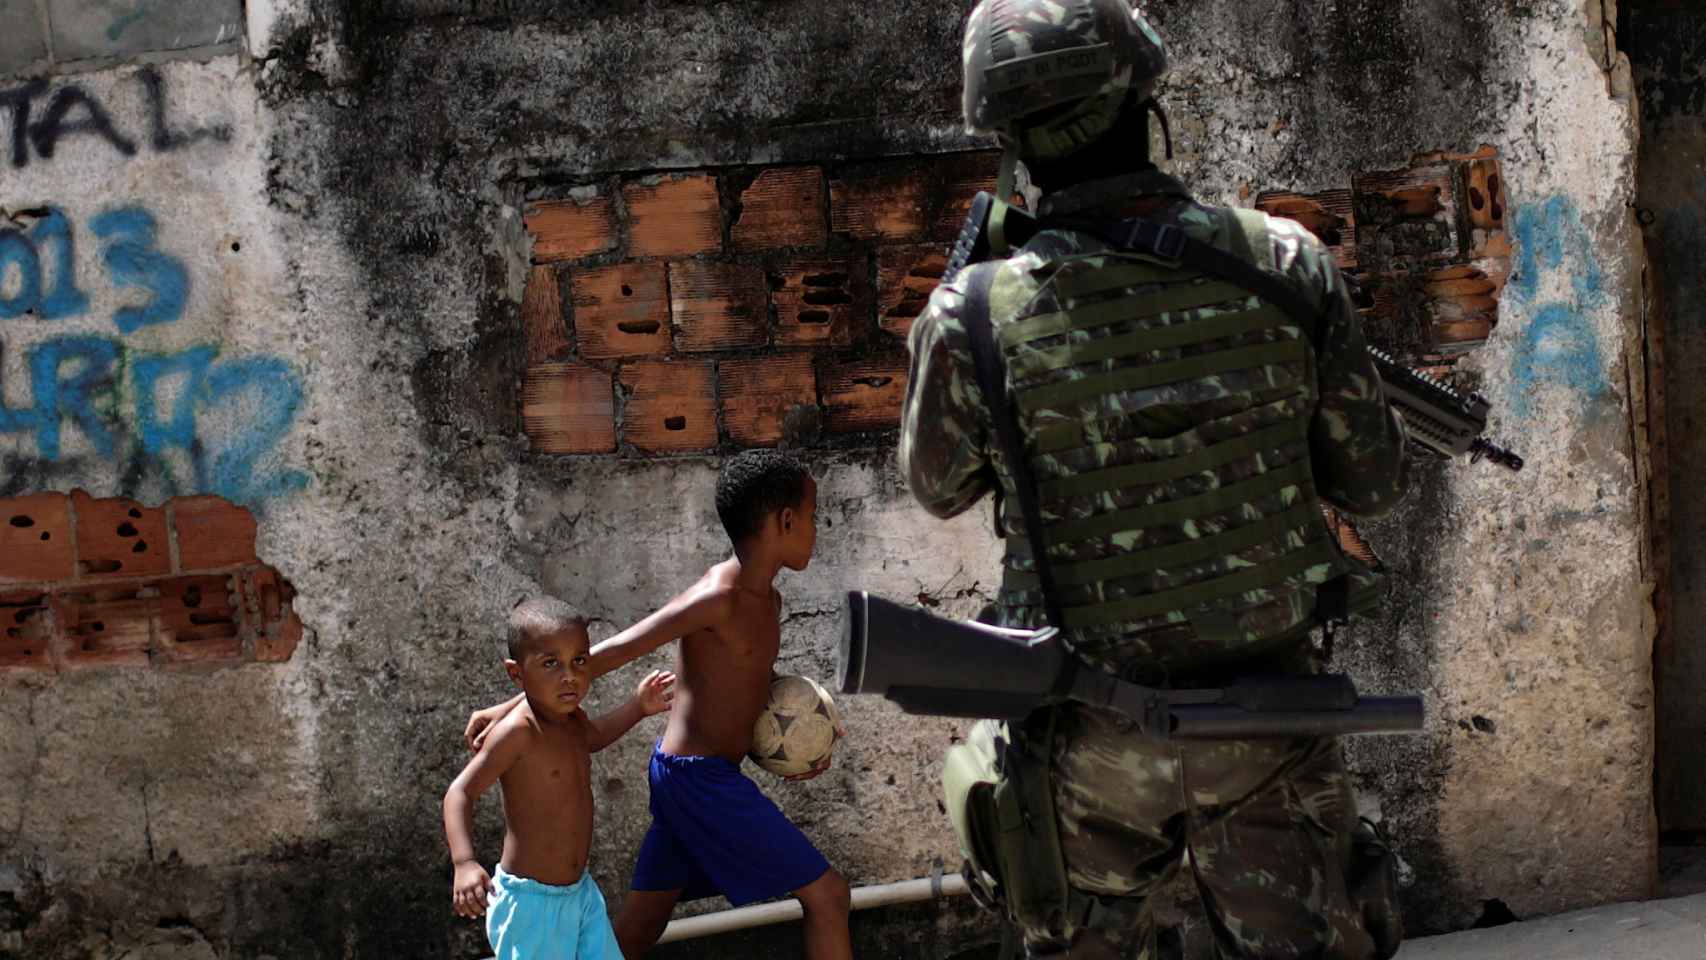 Un soldado patrulla las calles de la favela Alemão.